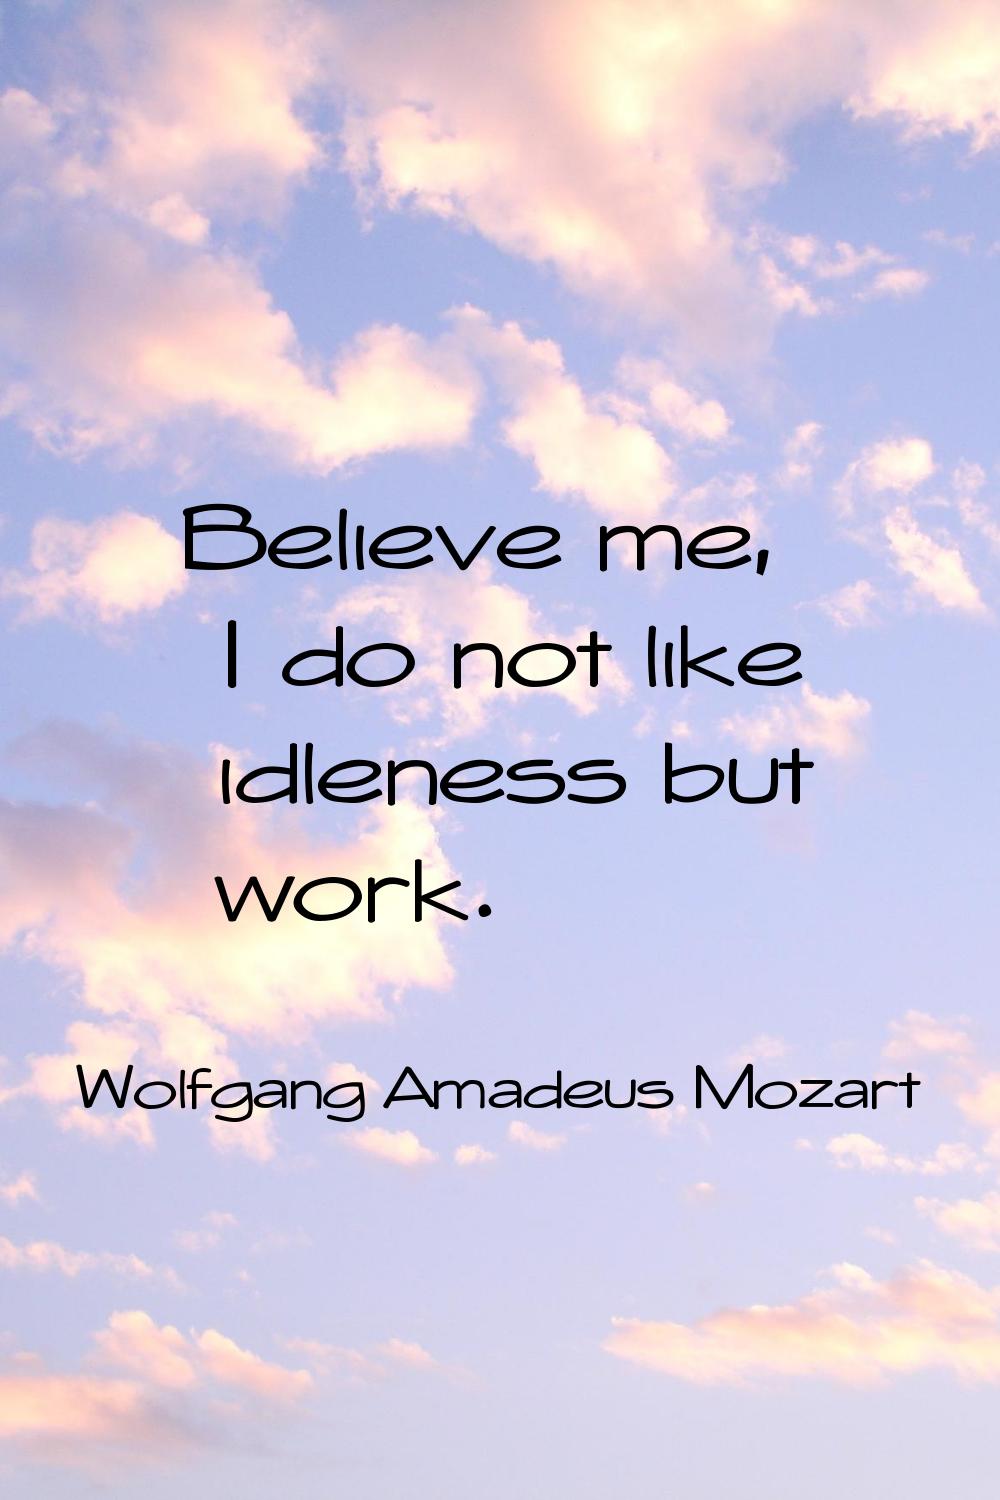 Believe me, I do not like idleness but work.